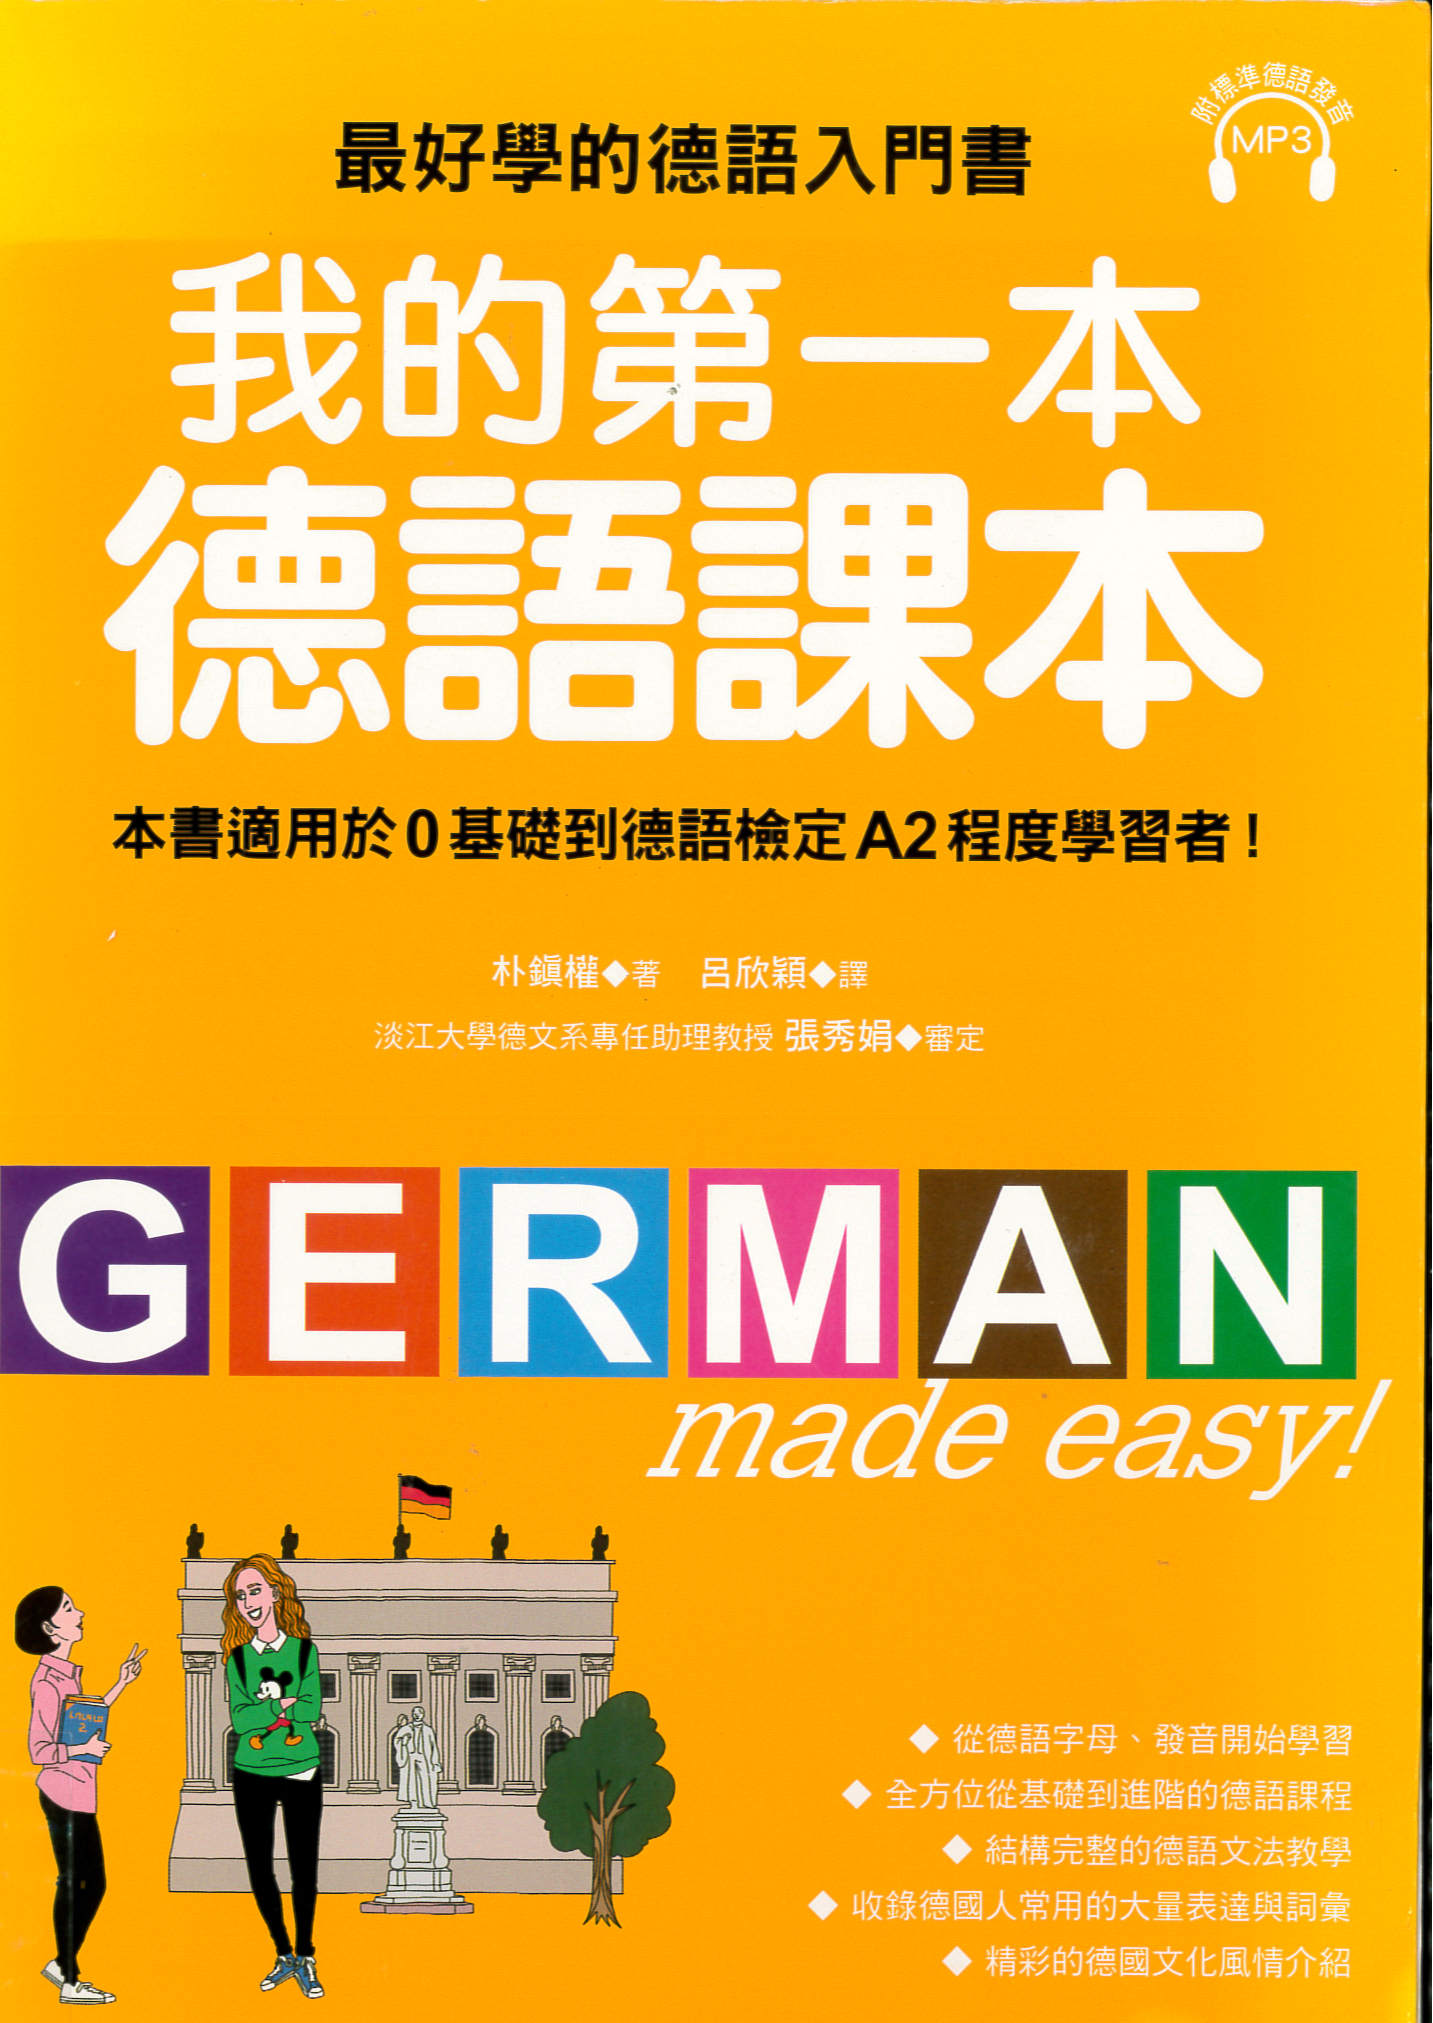 我的第一本德語課本 : 最好學的德語入門書, 適用0基礎到A2程度學習者 /